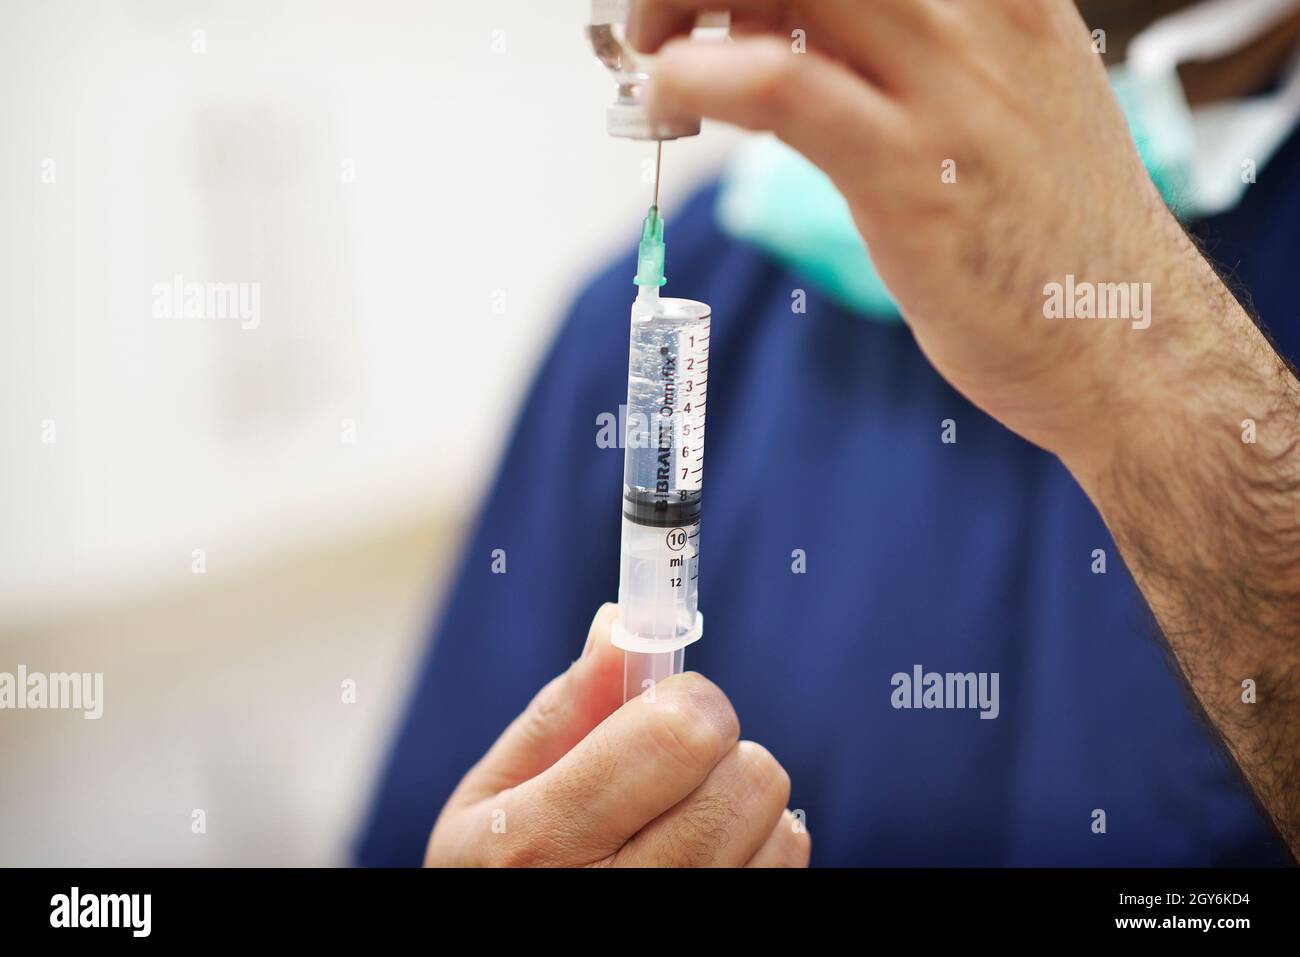 NHS y algunos profesionales de la salud privados administran vacunas en una cirugía en el Reino Unido Foto de stock